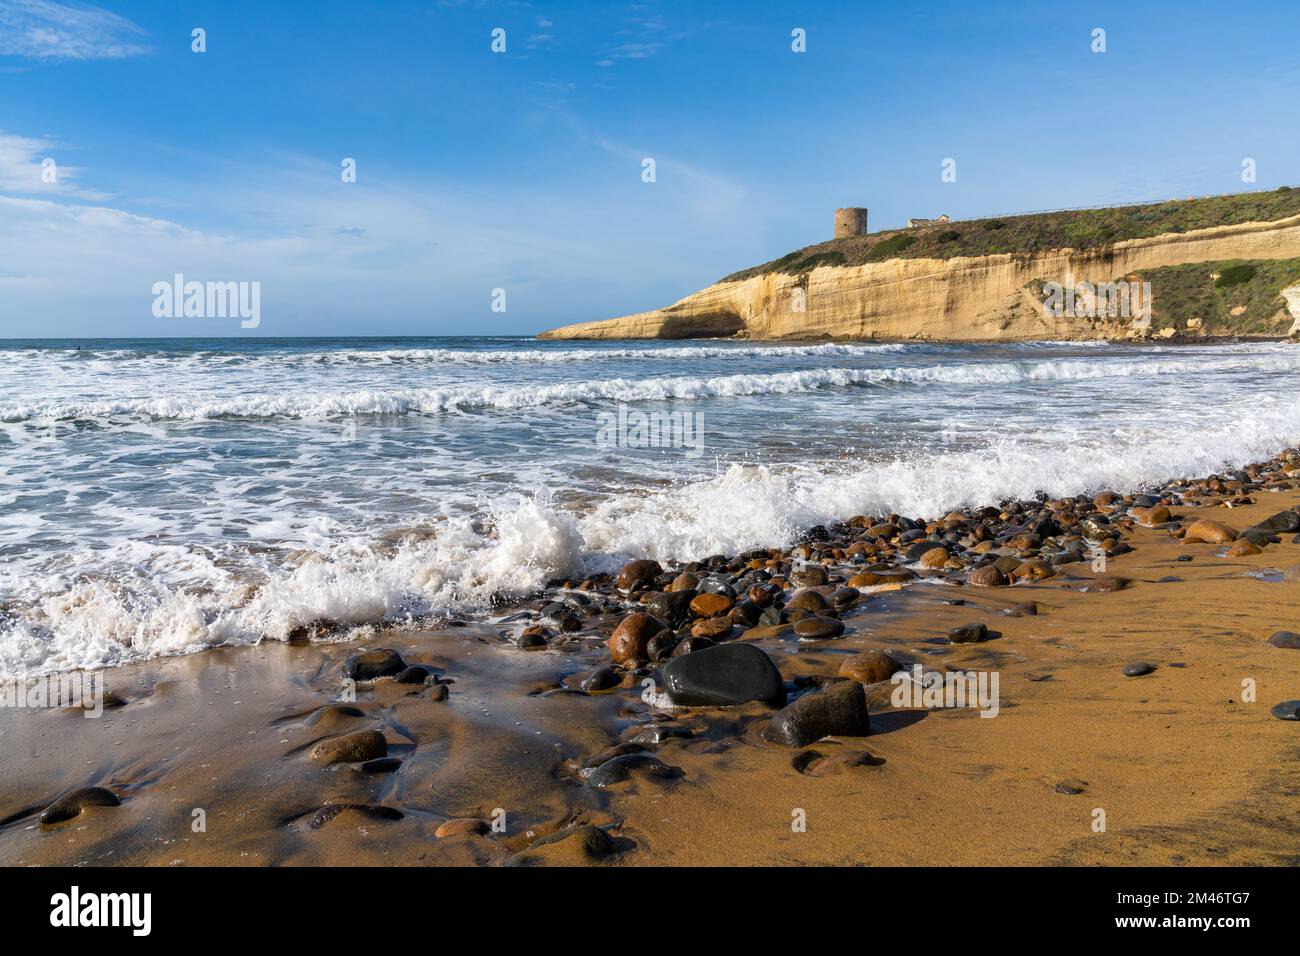 La spiaggia rocciosa e sabbiosa di Santa Caterina in Sardegna con la torre di avvistamento Pittinuri sulla scogliera alle spalle Foto Stock